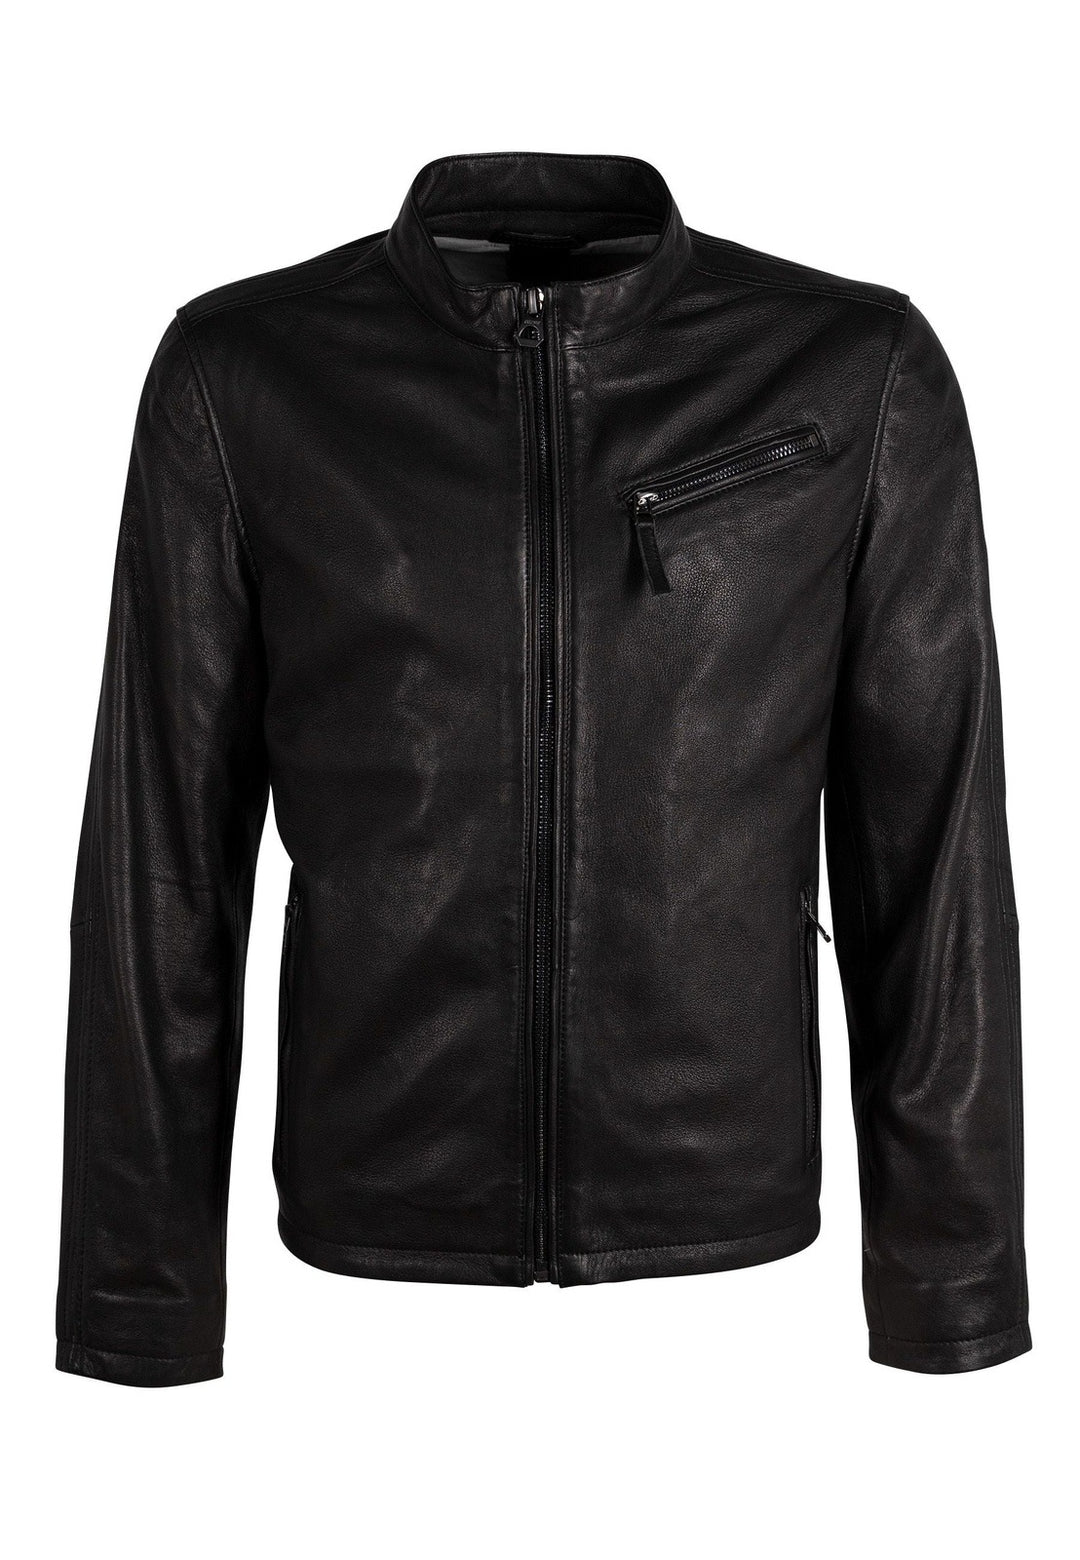 Mauritius - Men - Jaqua CF Leather Jacket